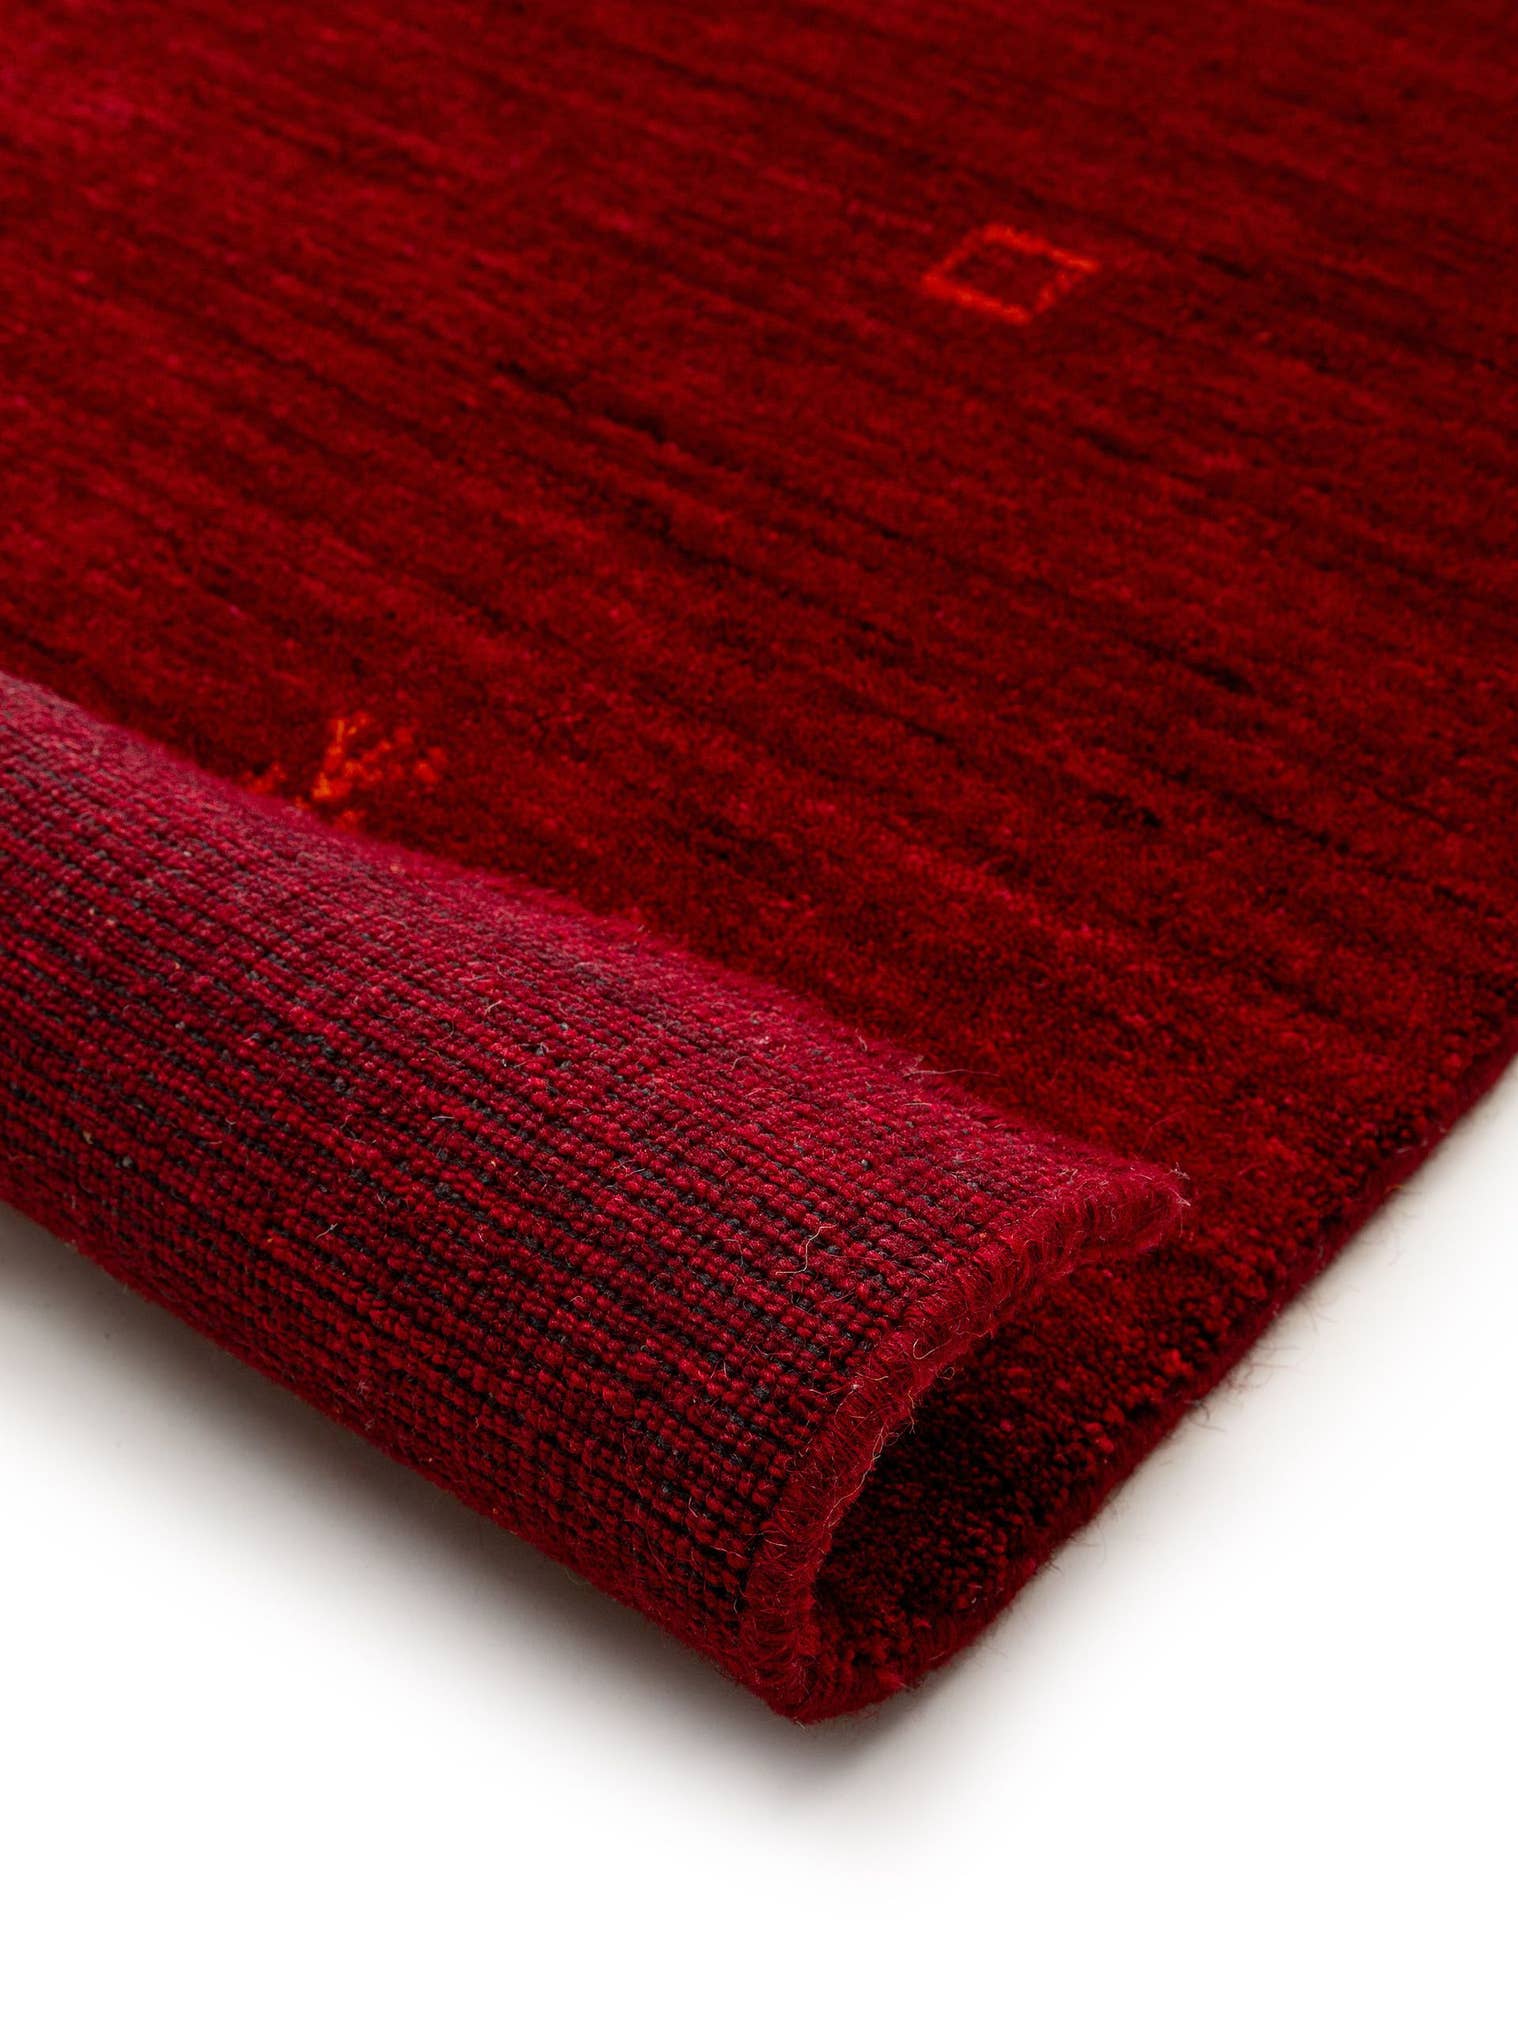 Teppich aus 100% Wolle in Rot mit 6 bis 10 mm hohem Flor von benuta Nest